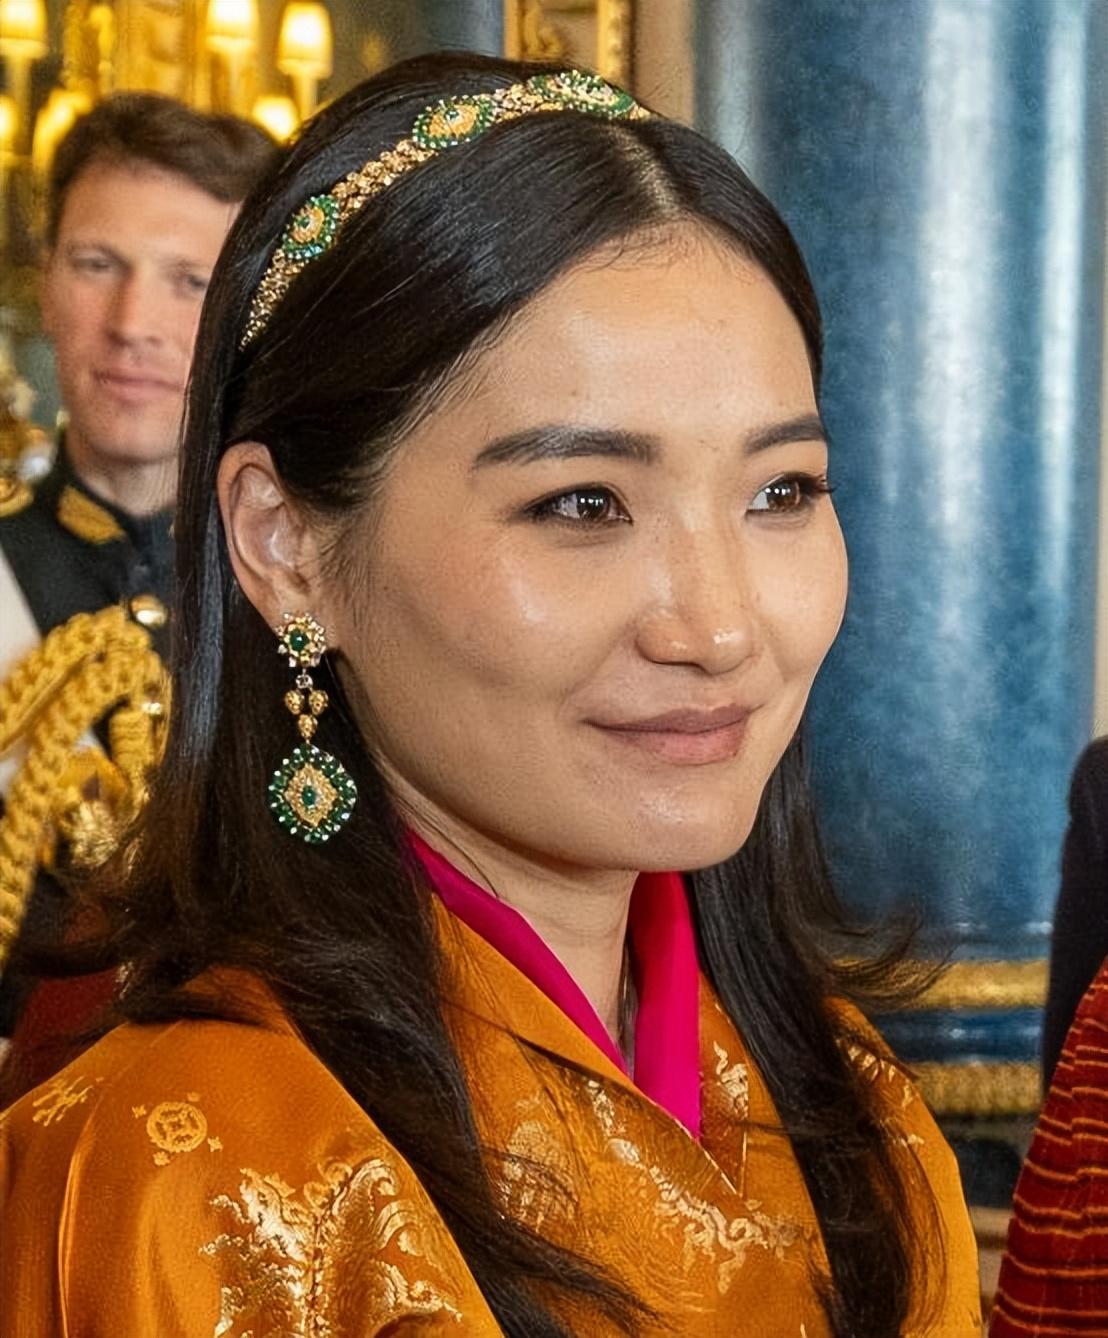 回顾:不丹王室晒出全家福,佩玛王后坐在c位,连生3子是人生赢家